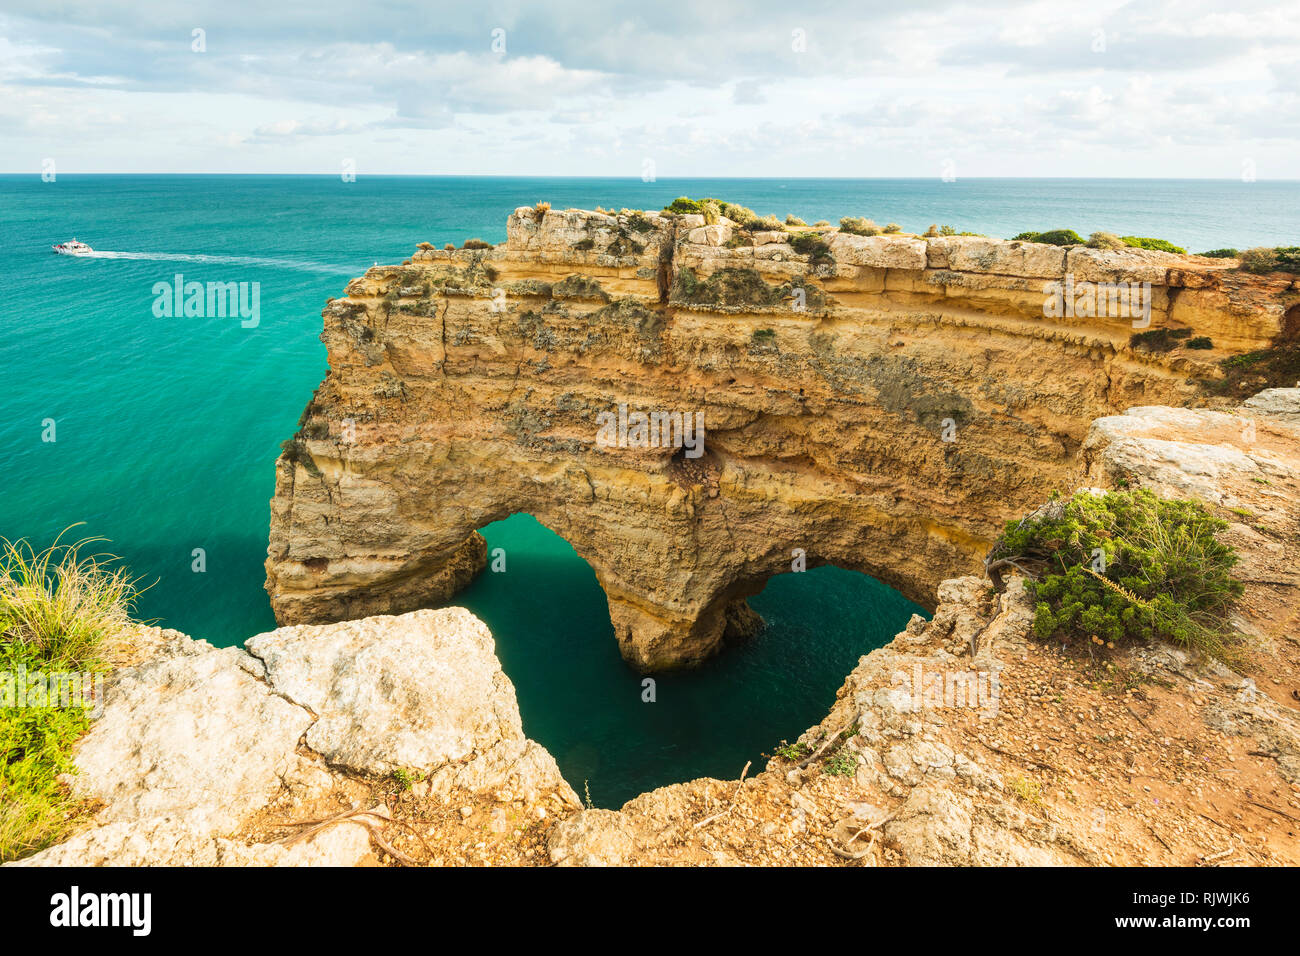 Archi naturali sotto rupi scoscese, Praia da Marinha, Algarve, Portogallo, Europa Foto Stock